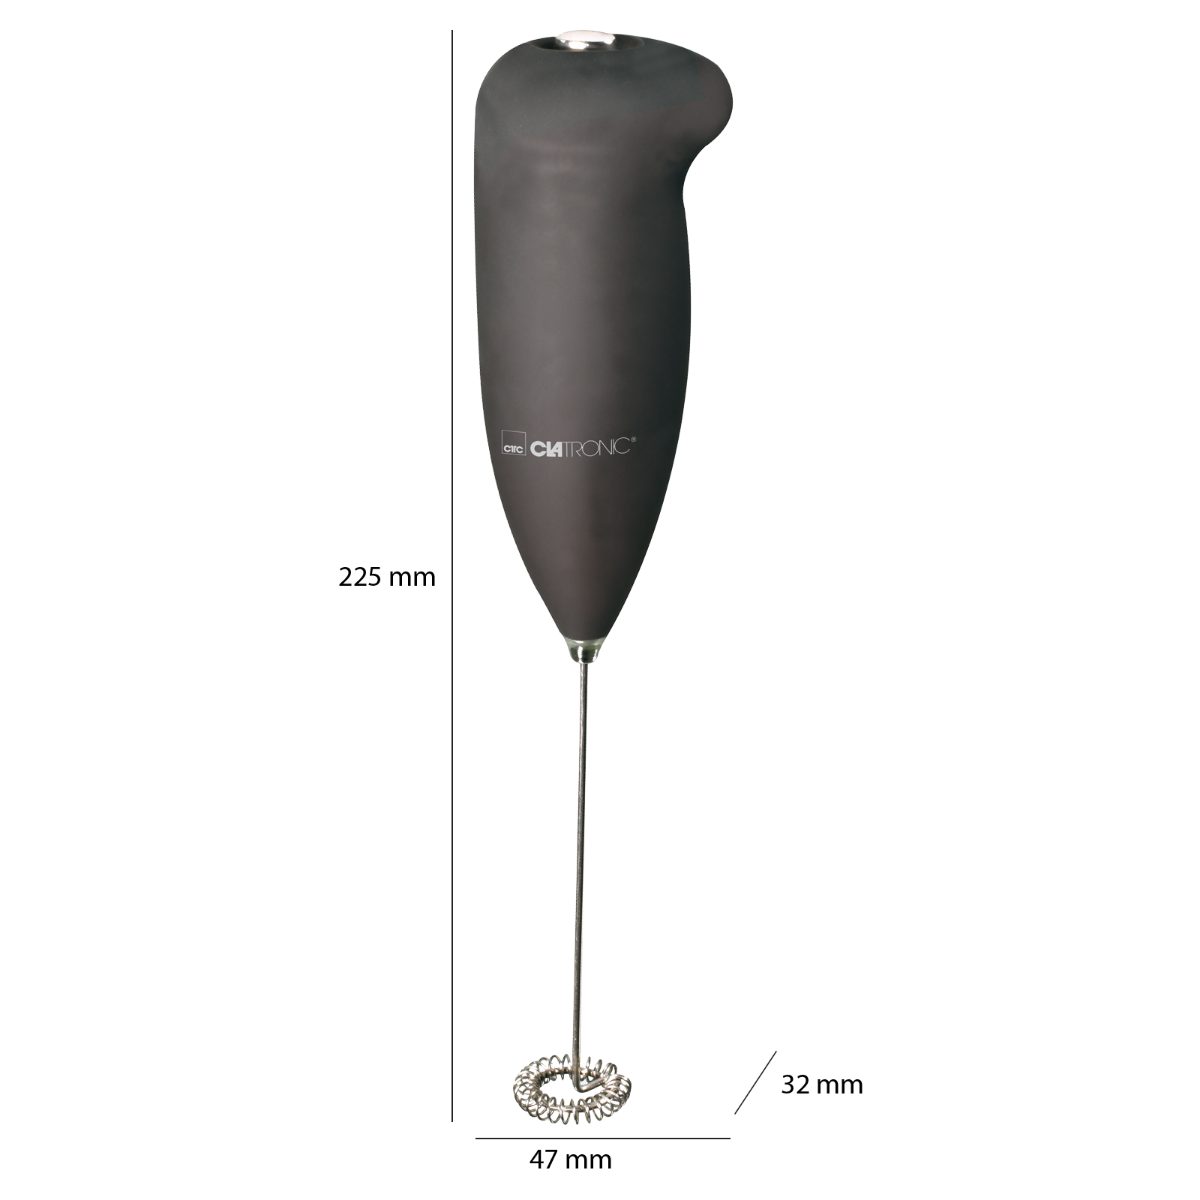 schwarz MS 3089, Milchaufschäumer CLATRONIC Soft-Touch-Gehäuse, Edelstahl-Schaumschläger